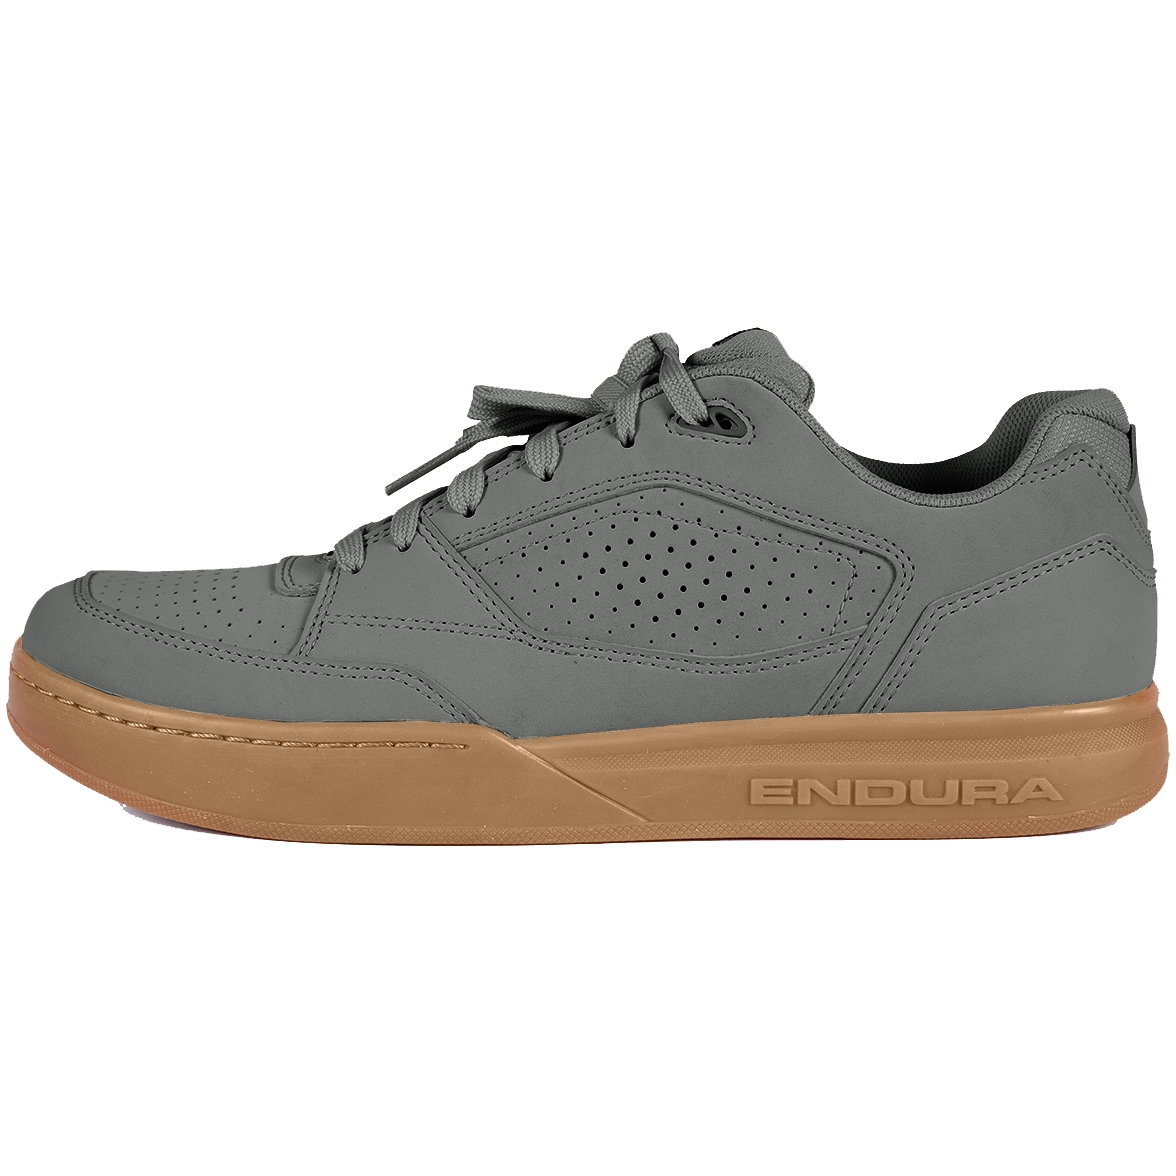 Produktbild von Endura Hummvee Flat Pedal Schuhe - zinn-grau